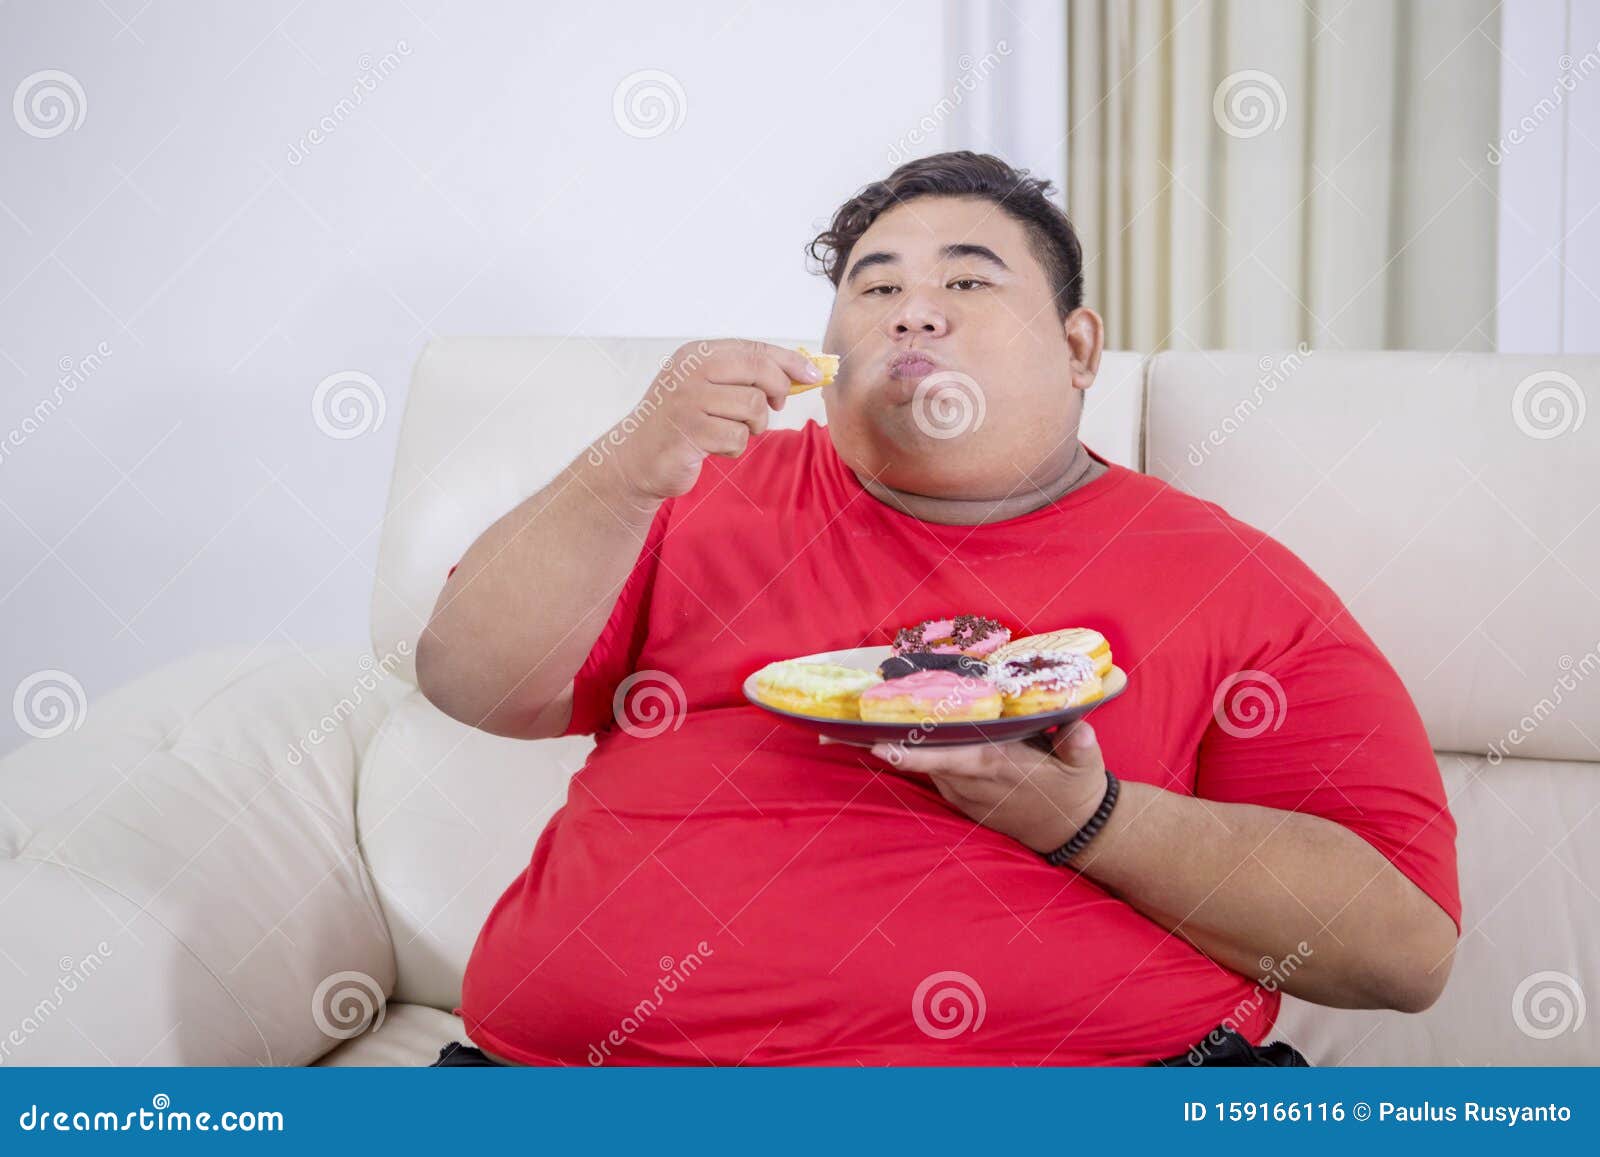 亚洲胖子吃炸鸡穿白衬衫. 库存图片. 图片 包括有 油煎, 健康, 肥胖病, 享用, 食物, 正餐, 快速 - 204504803